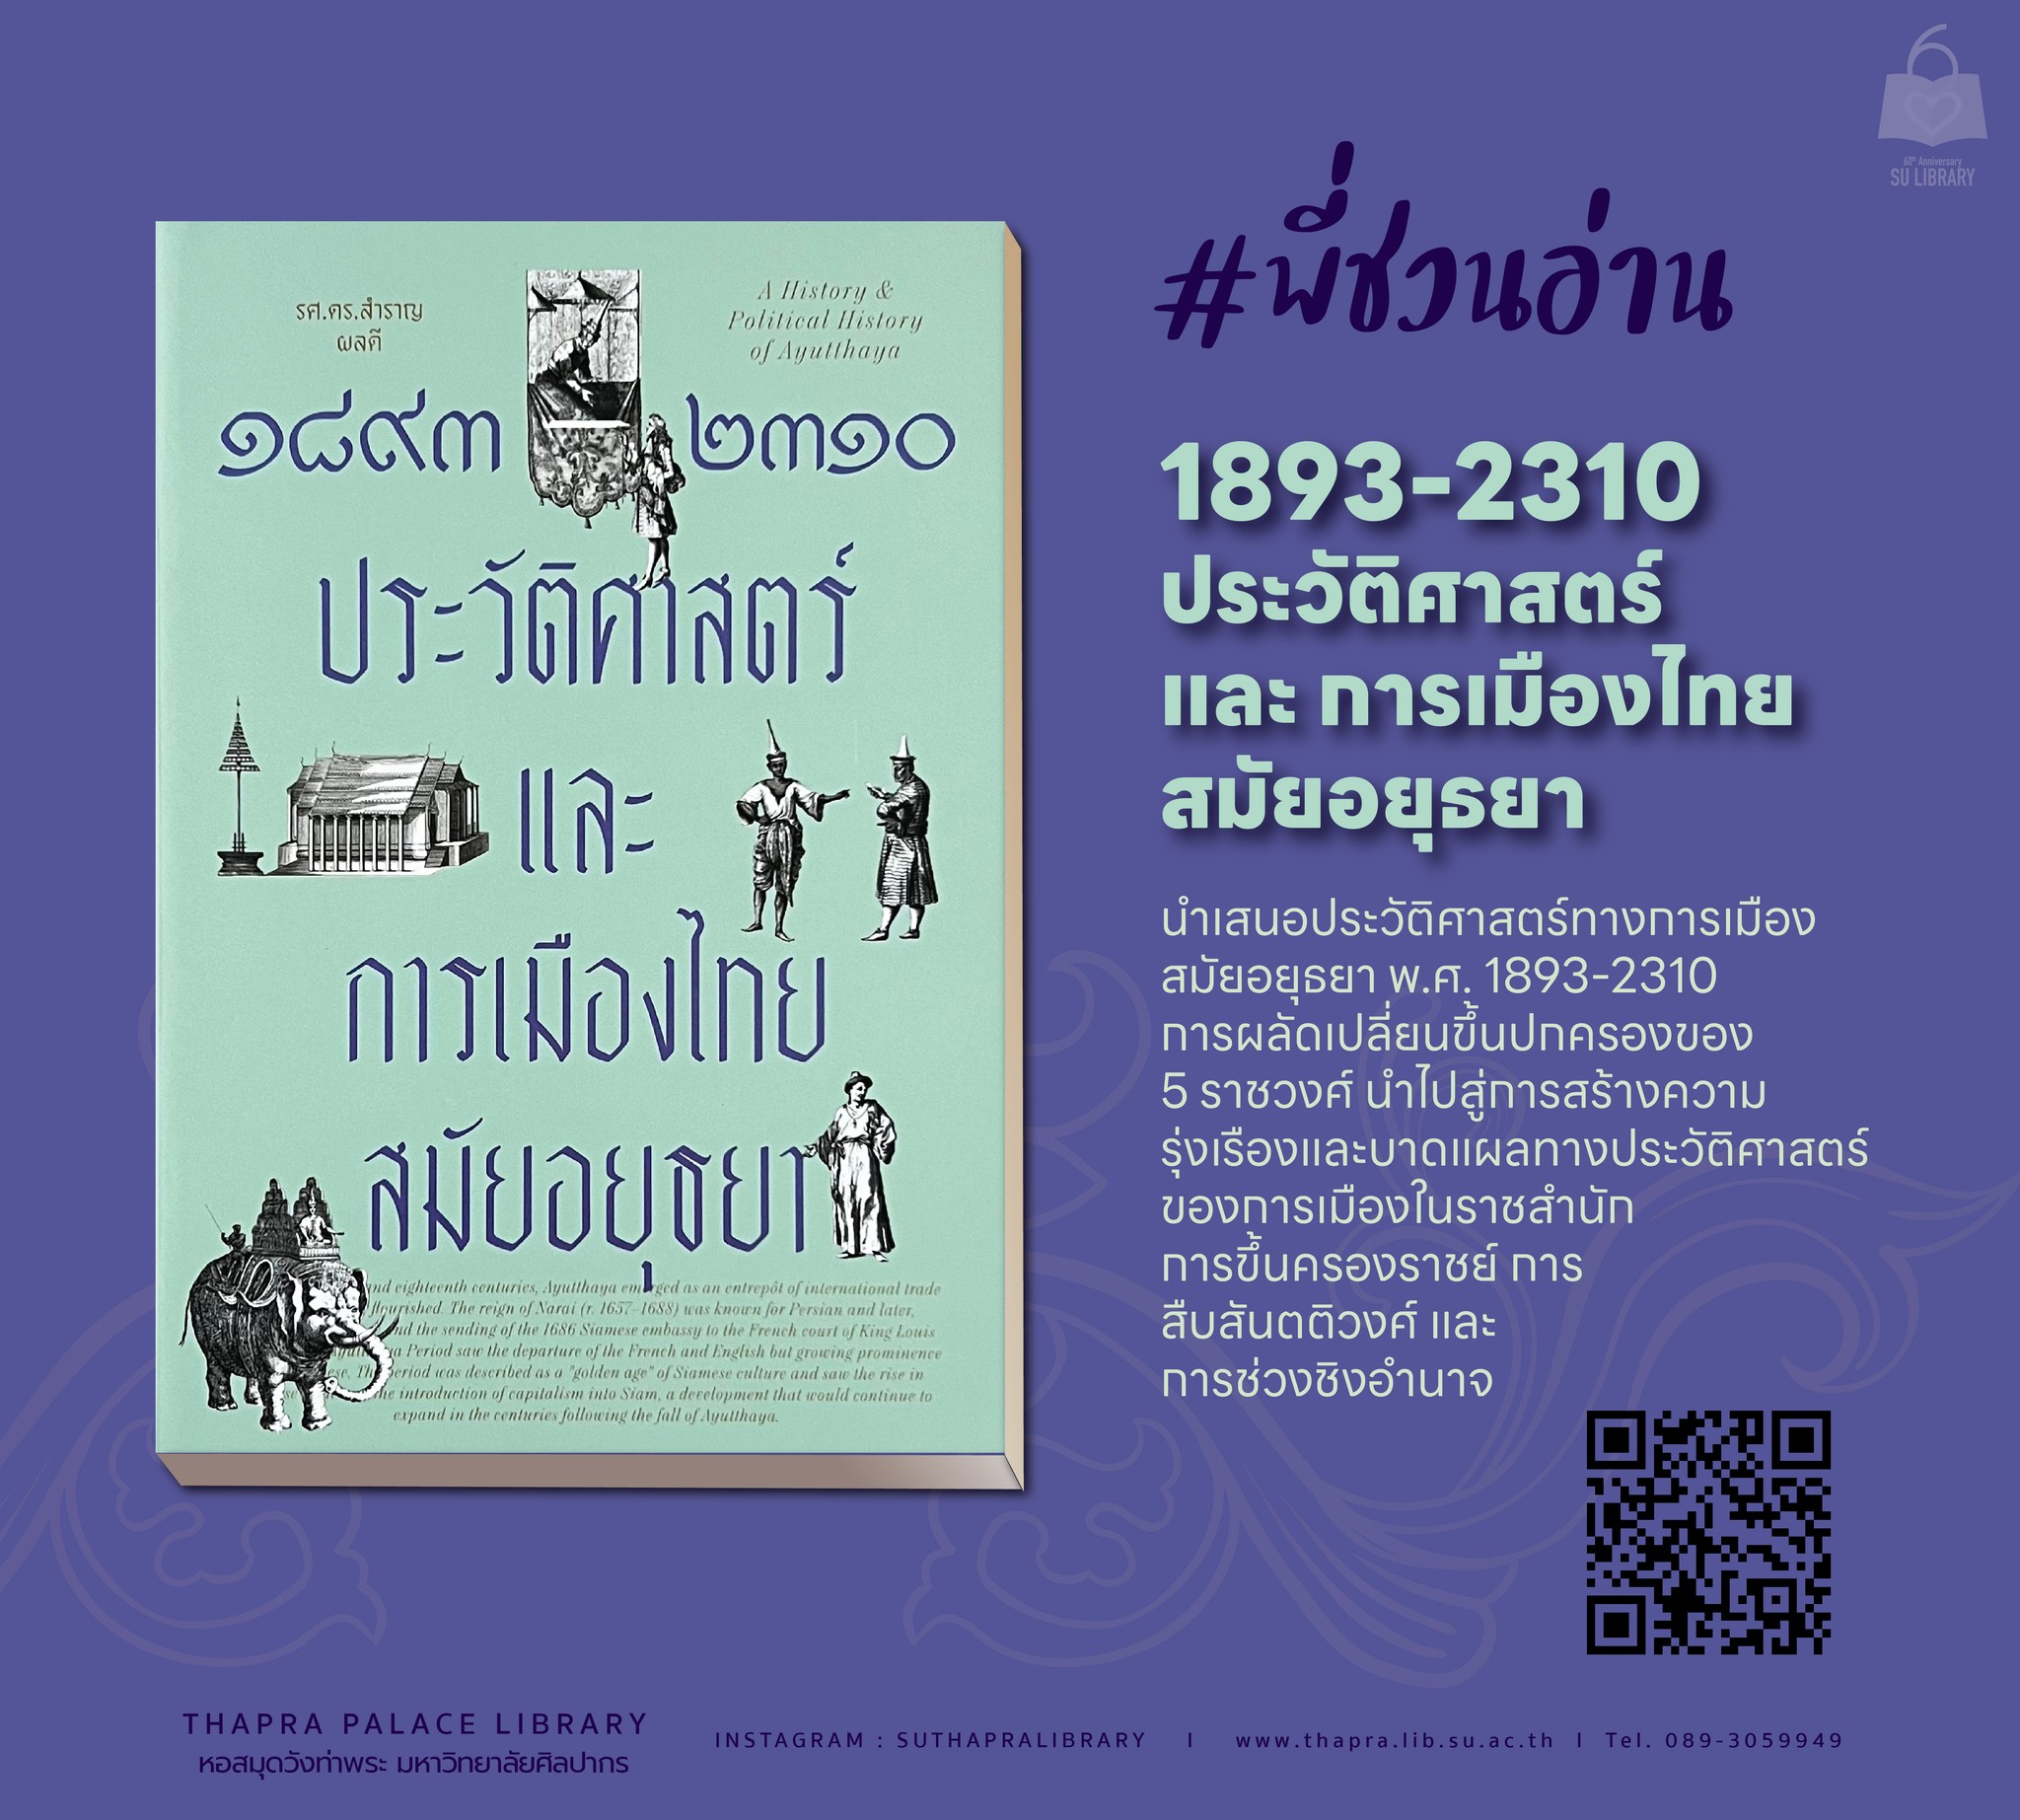 1893-2310 ประวัติศาสตร์และการเมืองไทยสมัยอยุธยา